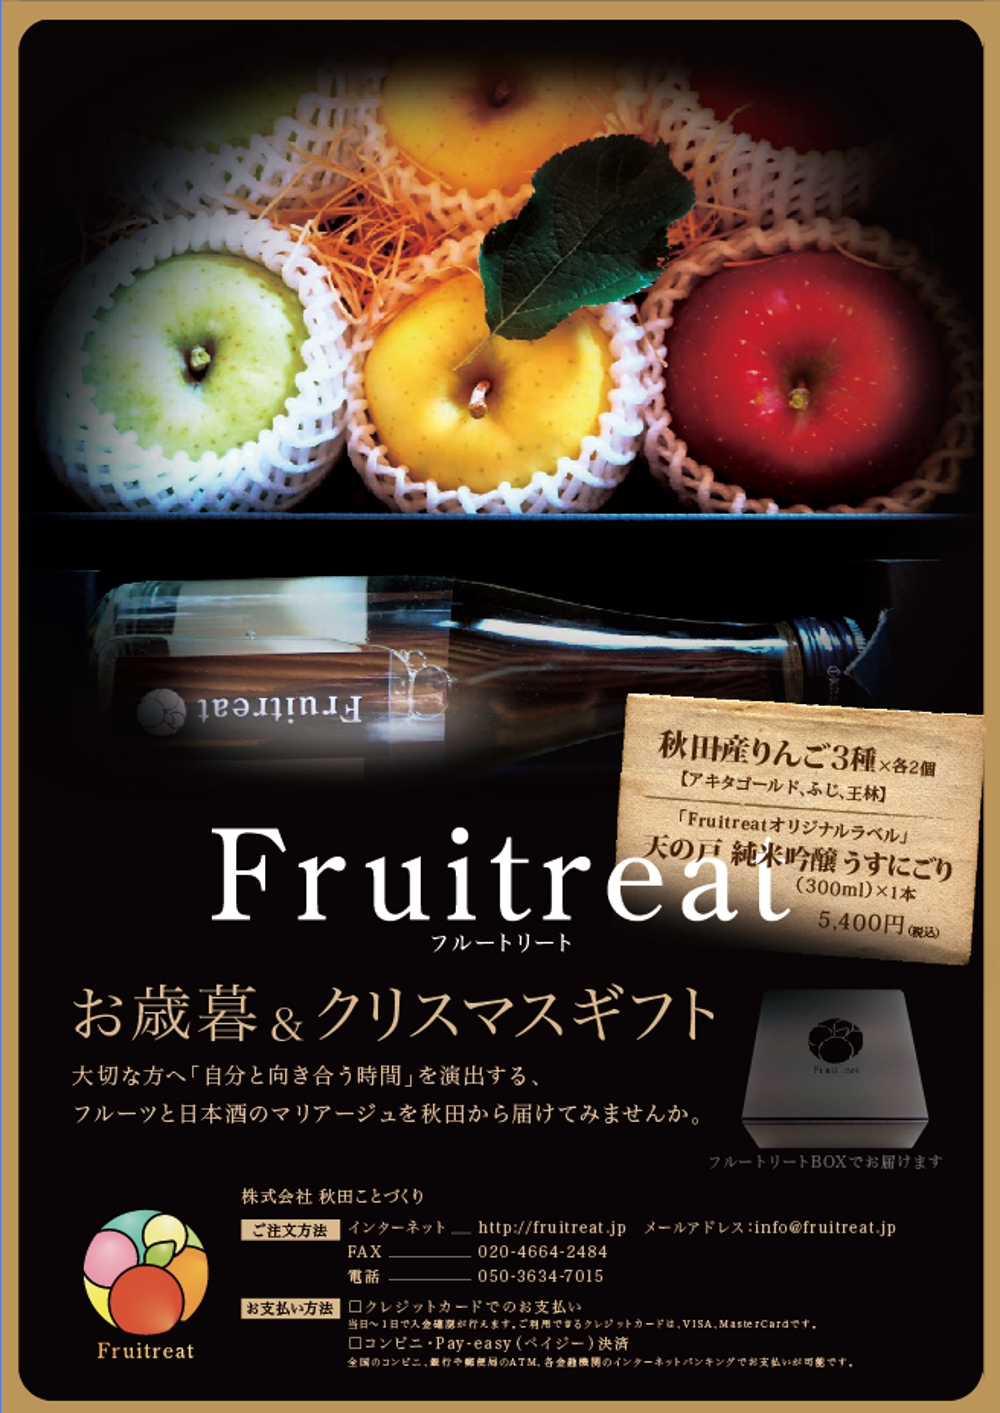 フルーツと日本酒のマリアージュ“Fruitreat"のお歳暮ギフトチラシデザイン